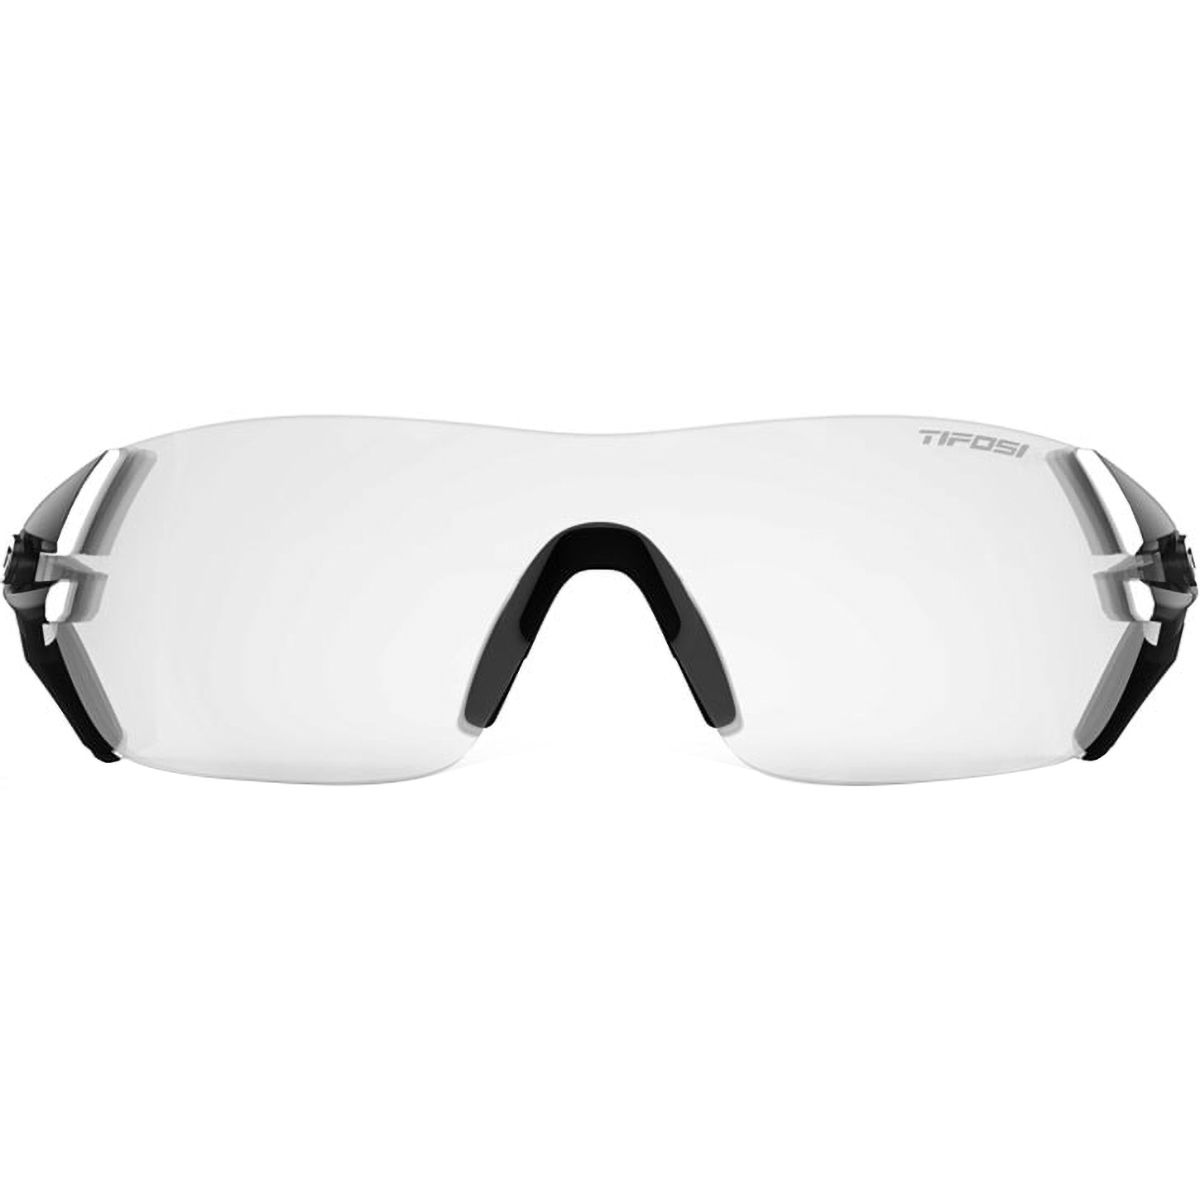 Tifosi Optics Slice Sunglasses - Men